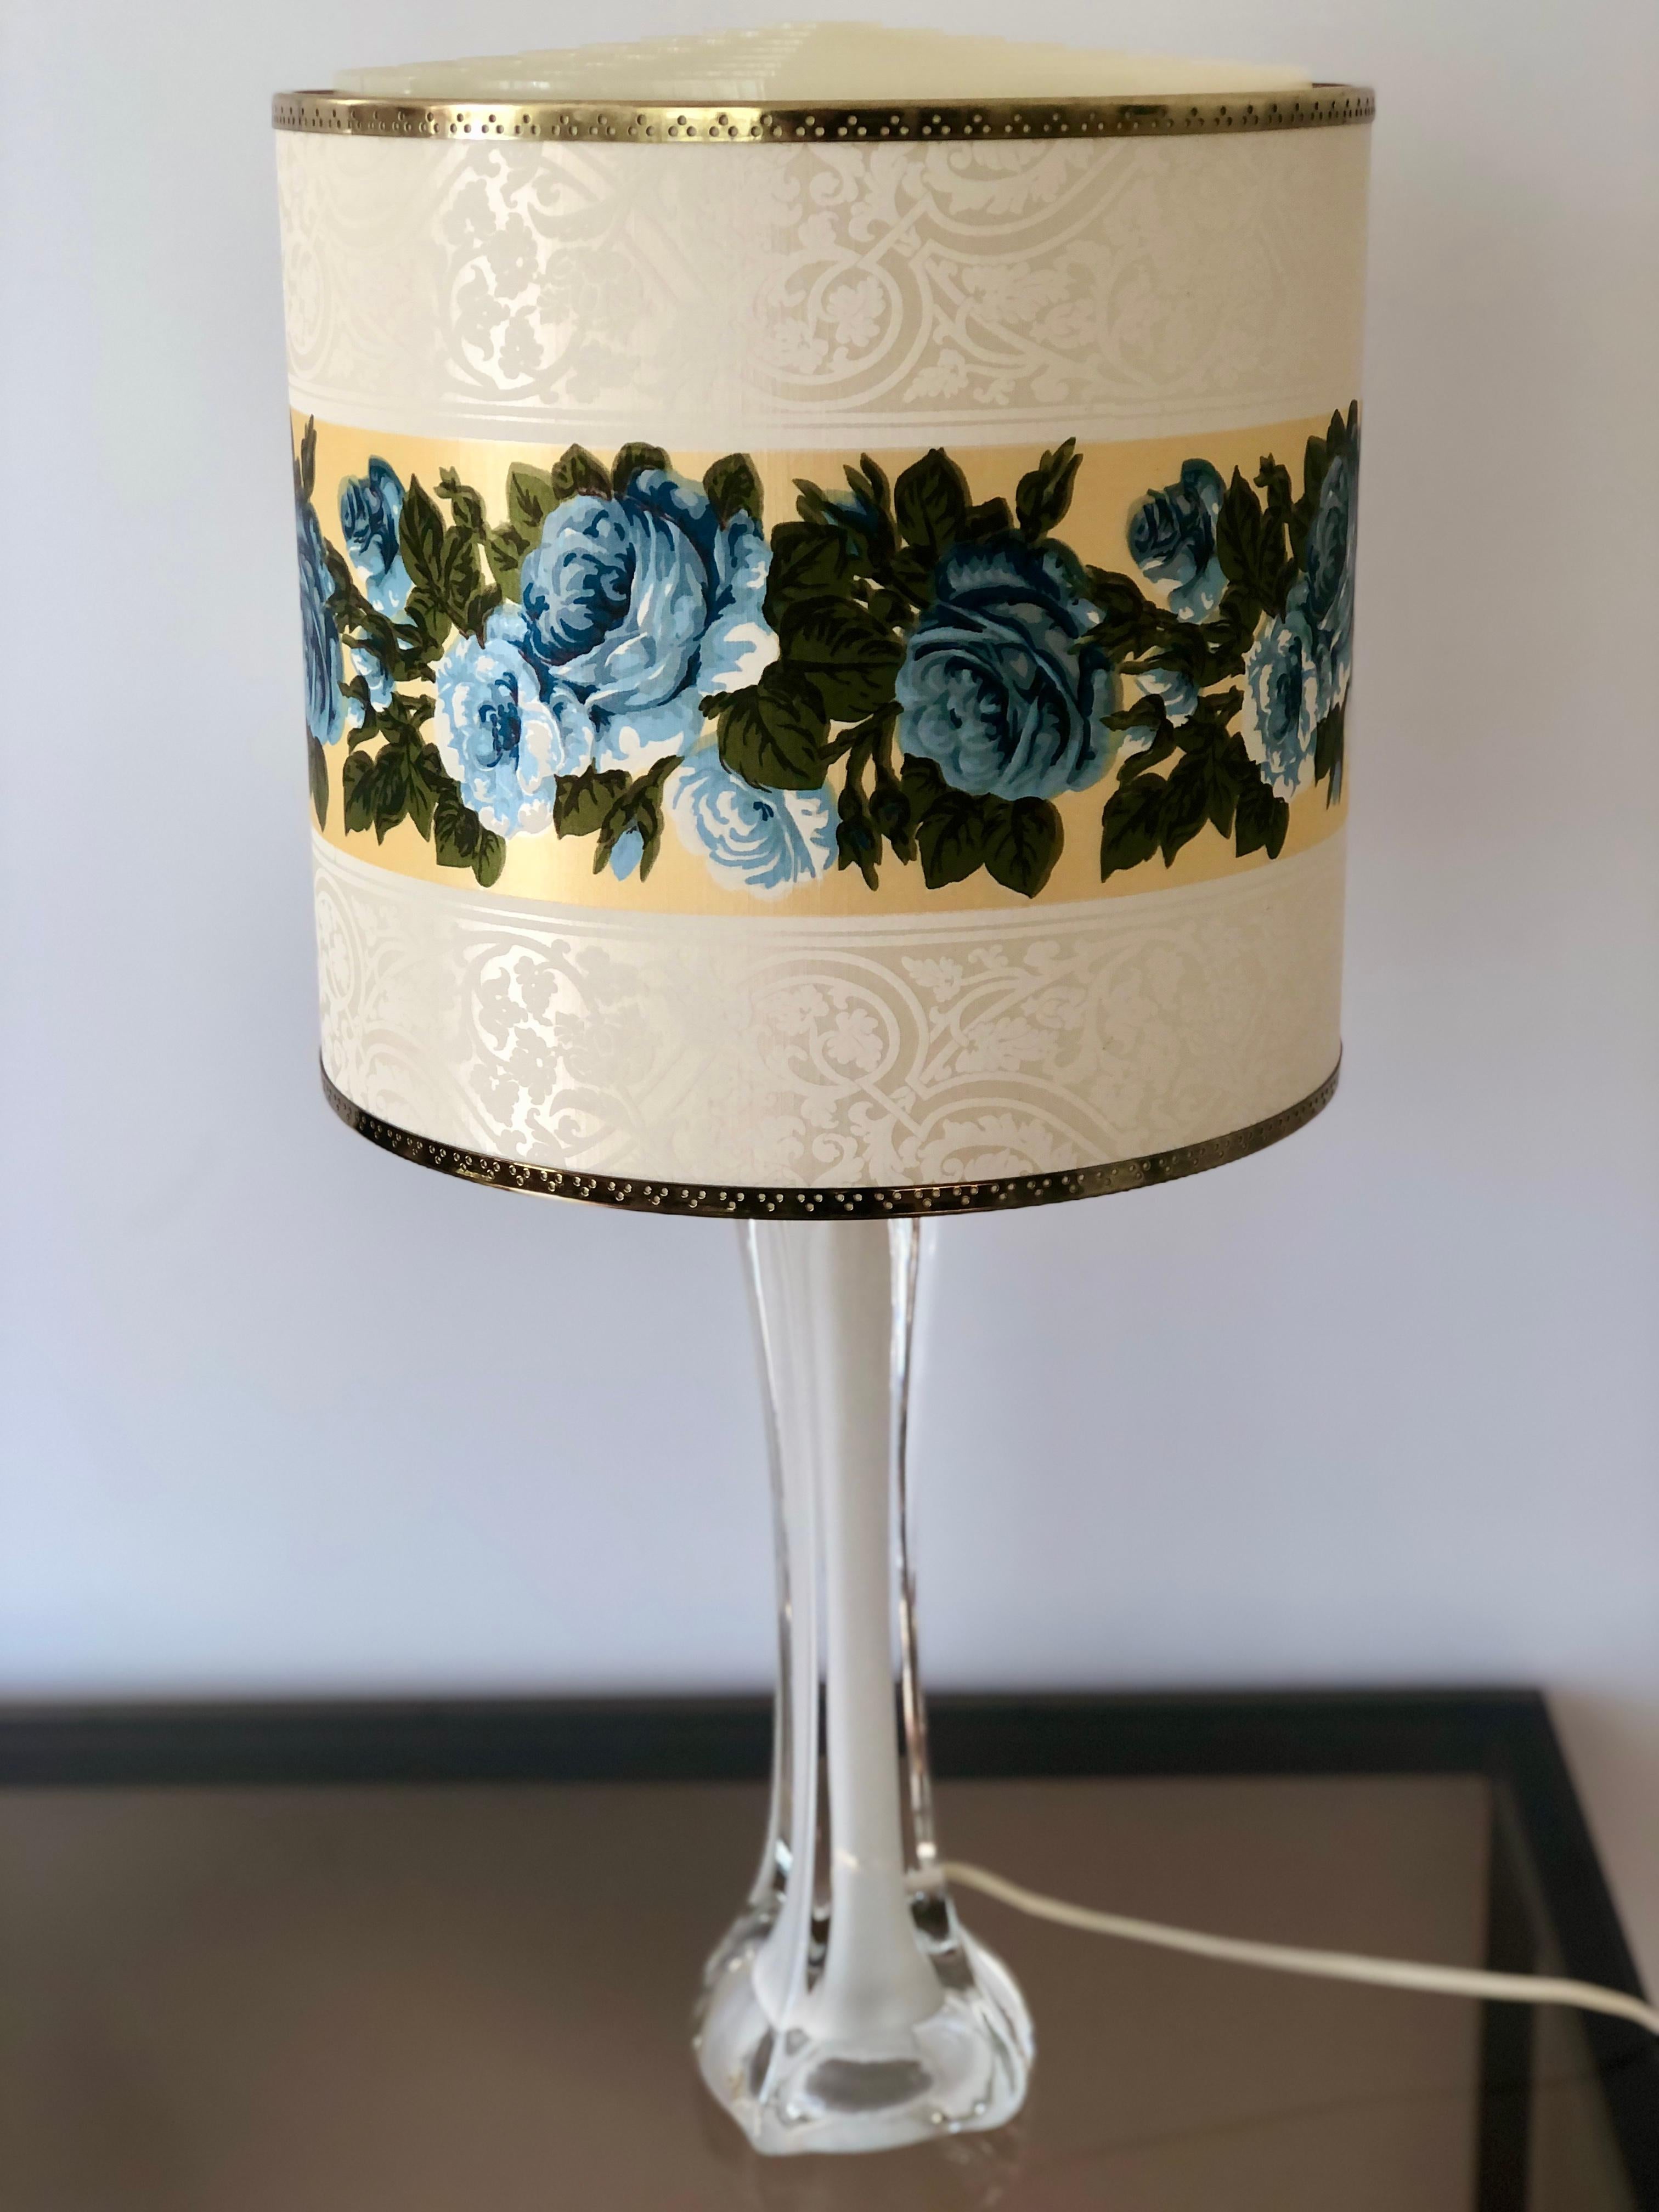 Lampe de table suédoise de style moderne du milieu du siècle, en verre blanc entouré de cristal clair, créée par le designer de verre d'art Paul Kedelv pour la société suédoise Flygsfors Glasbruk. 
Soufflé à la main dans l'élégant style Murano